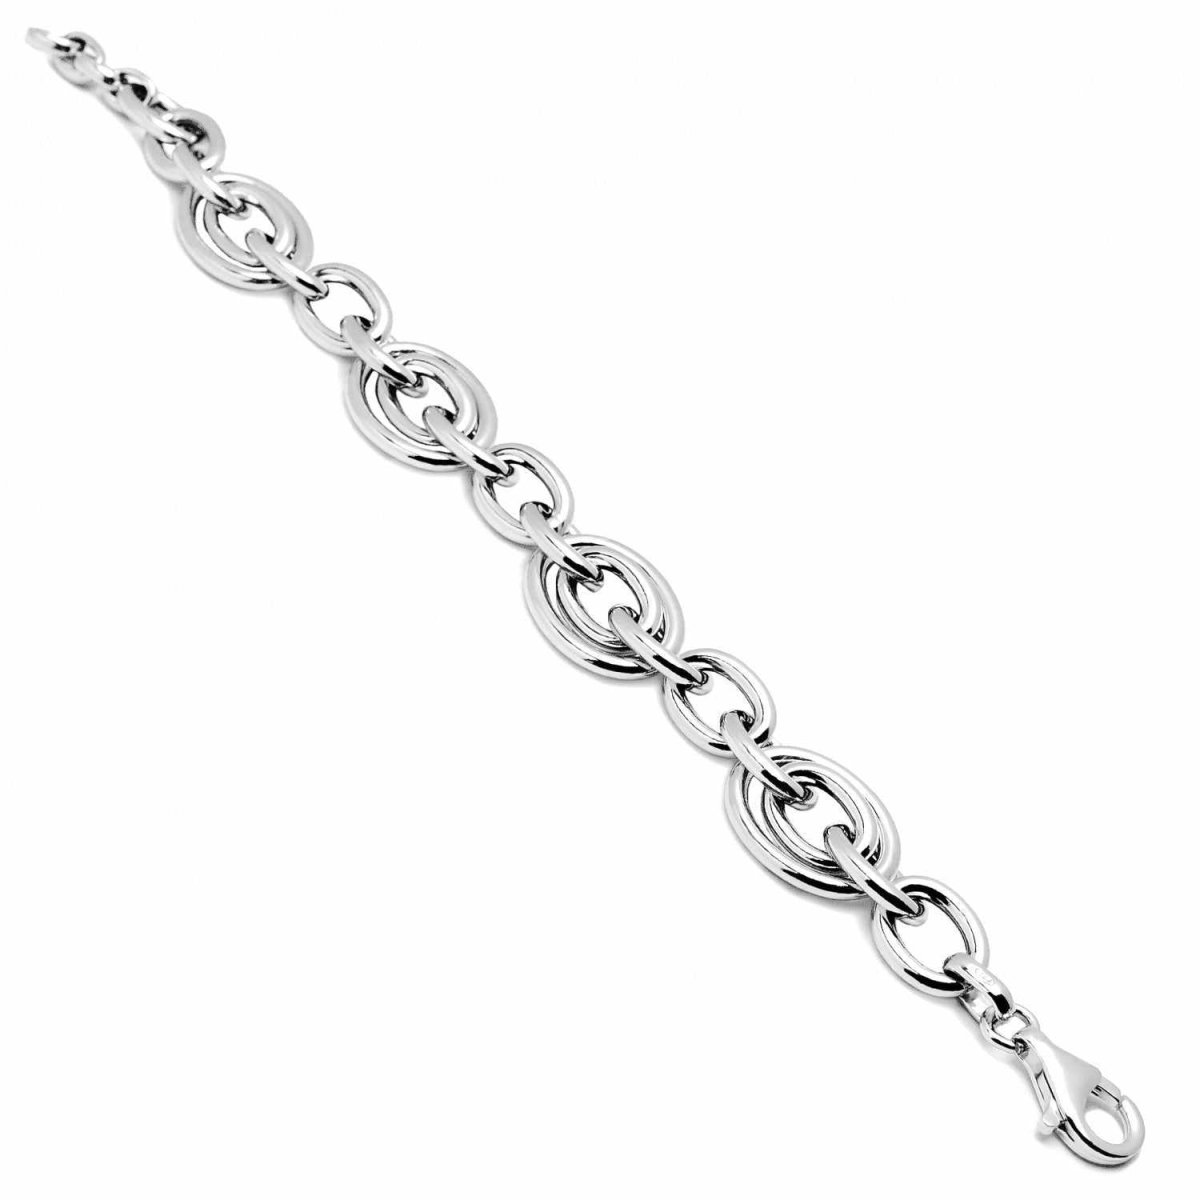 Bracelet - Silver link bracelet with tubular and wide design